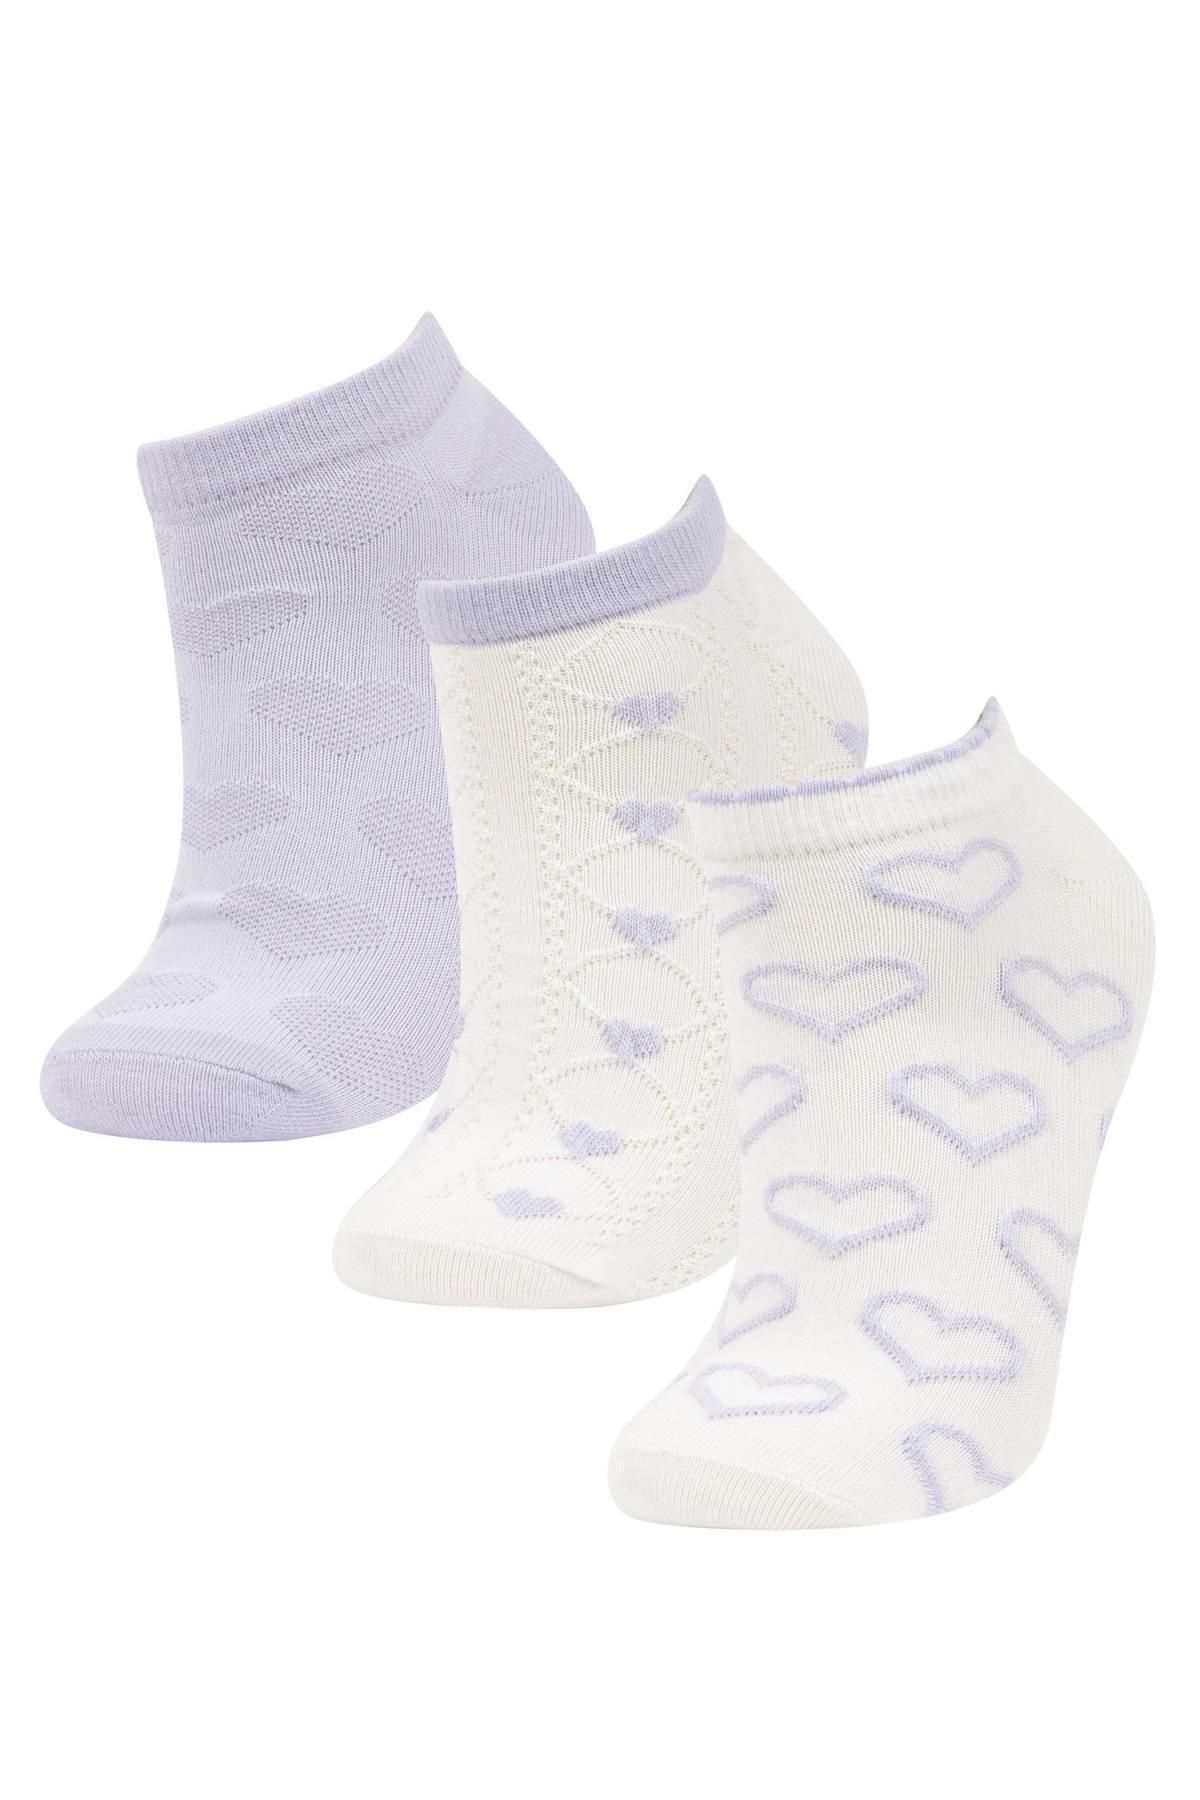 Defacto Kadın 3lü Pamuklu Patik Çorap B6019AXNS